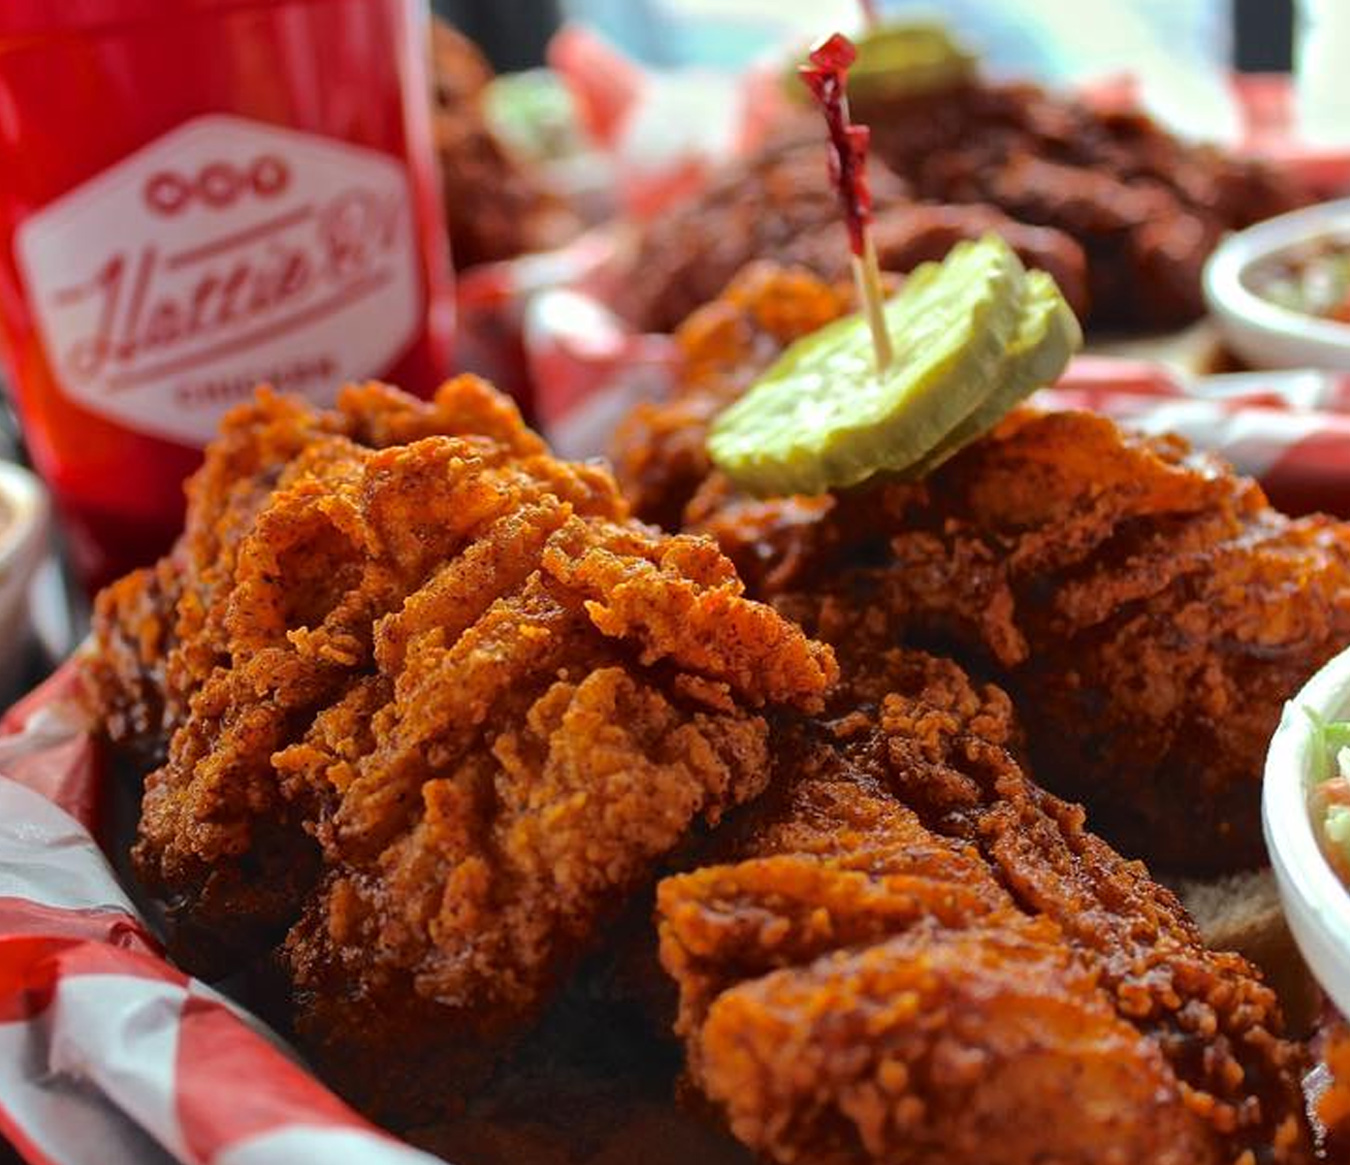 Where To Eat In Nashville - Hattie B's Hot Chicken